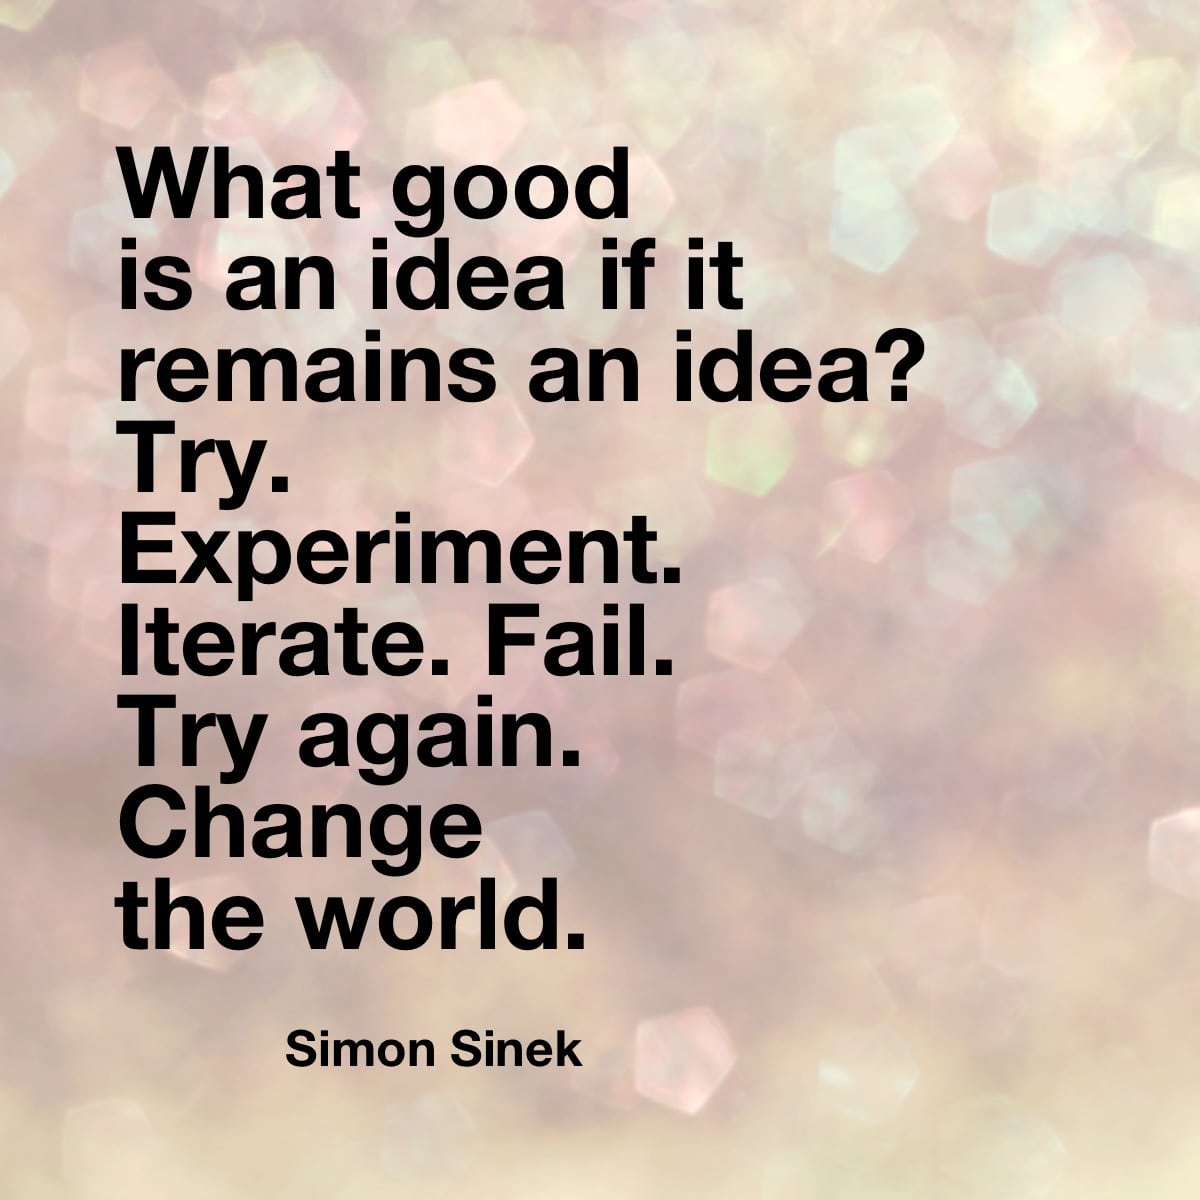 Simon Sinek quotes famous change the world